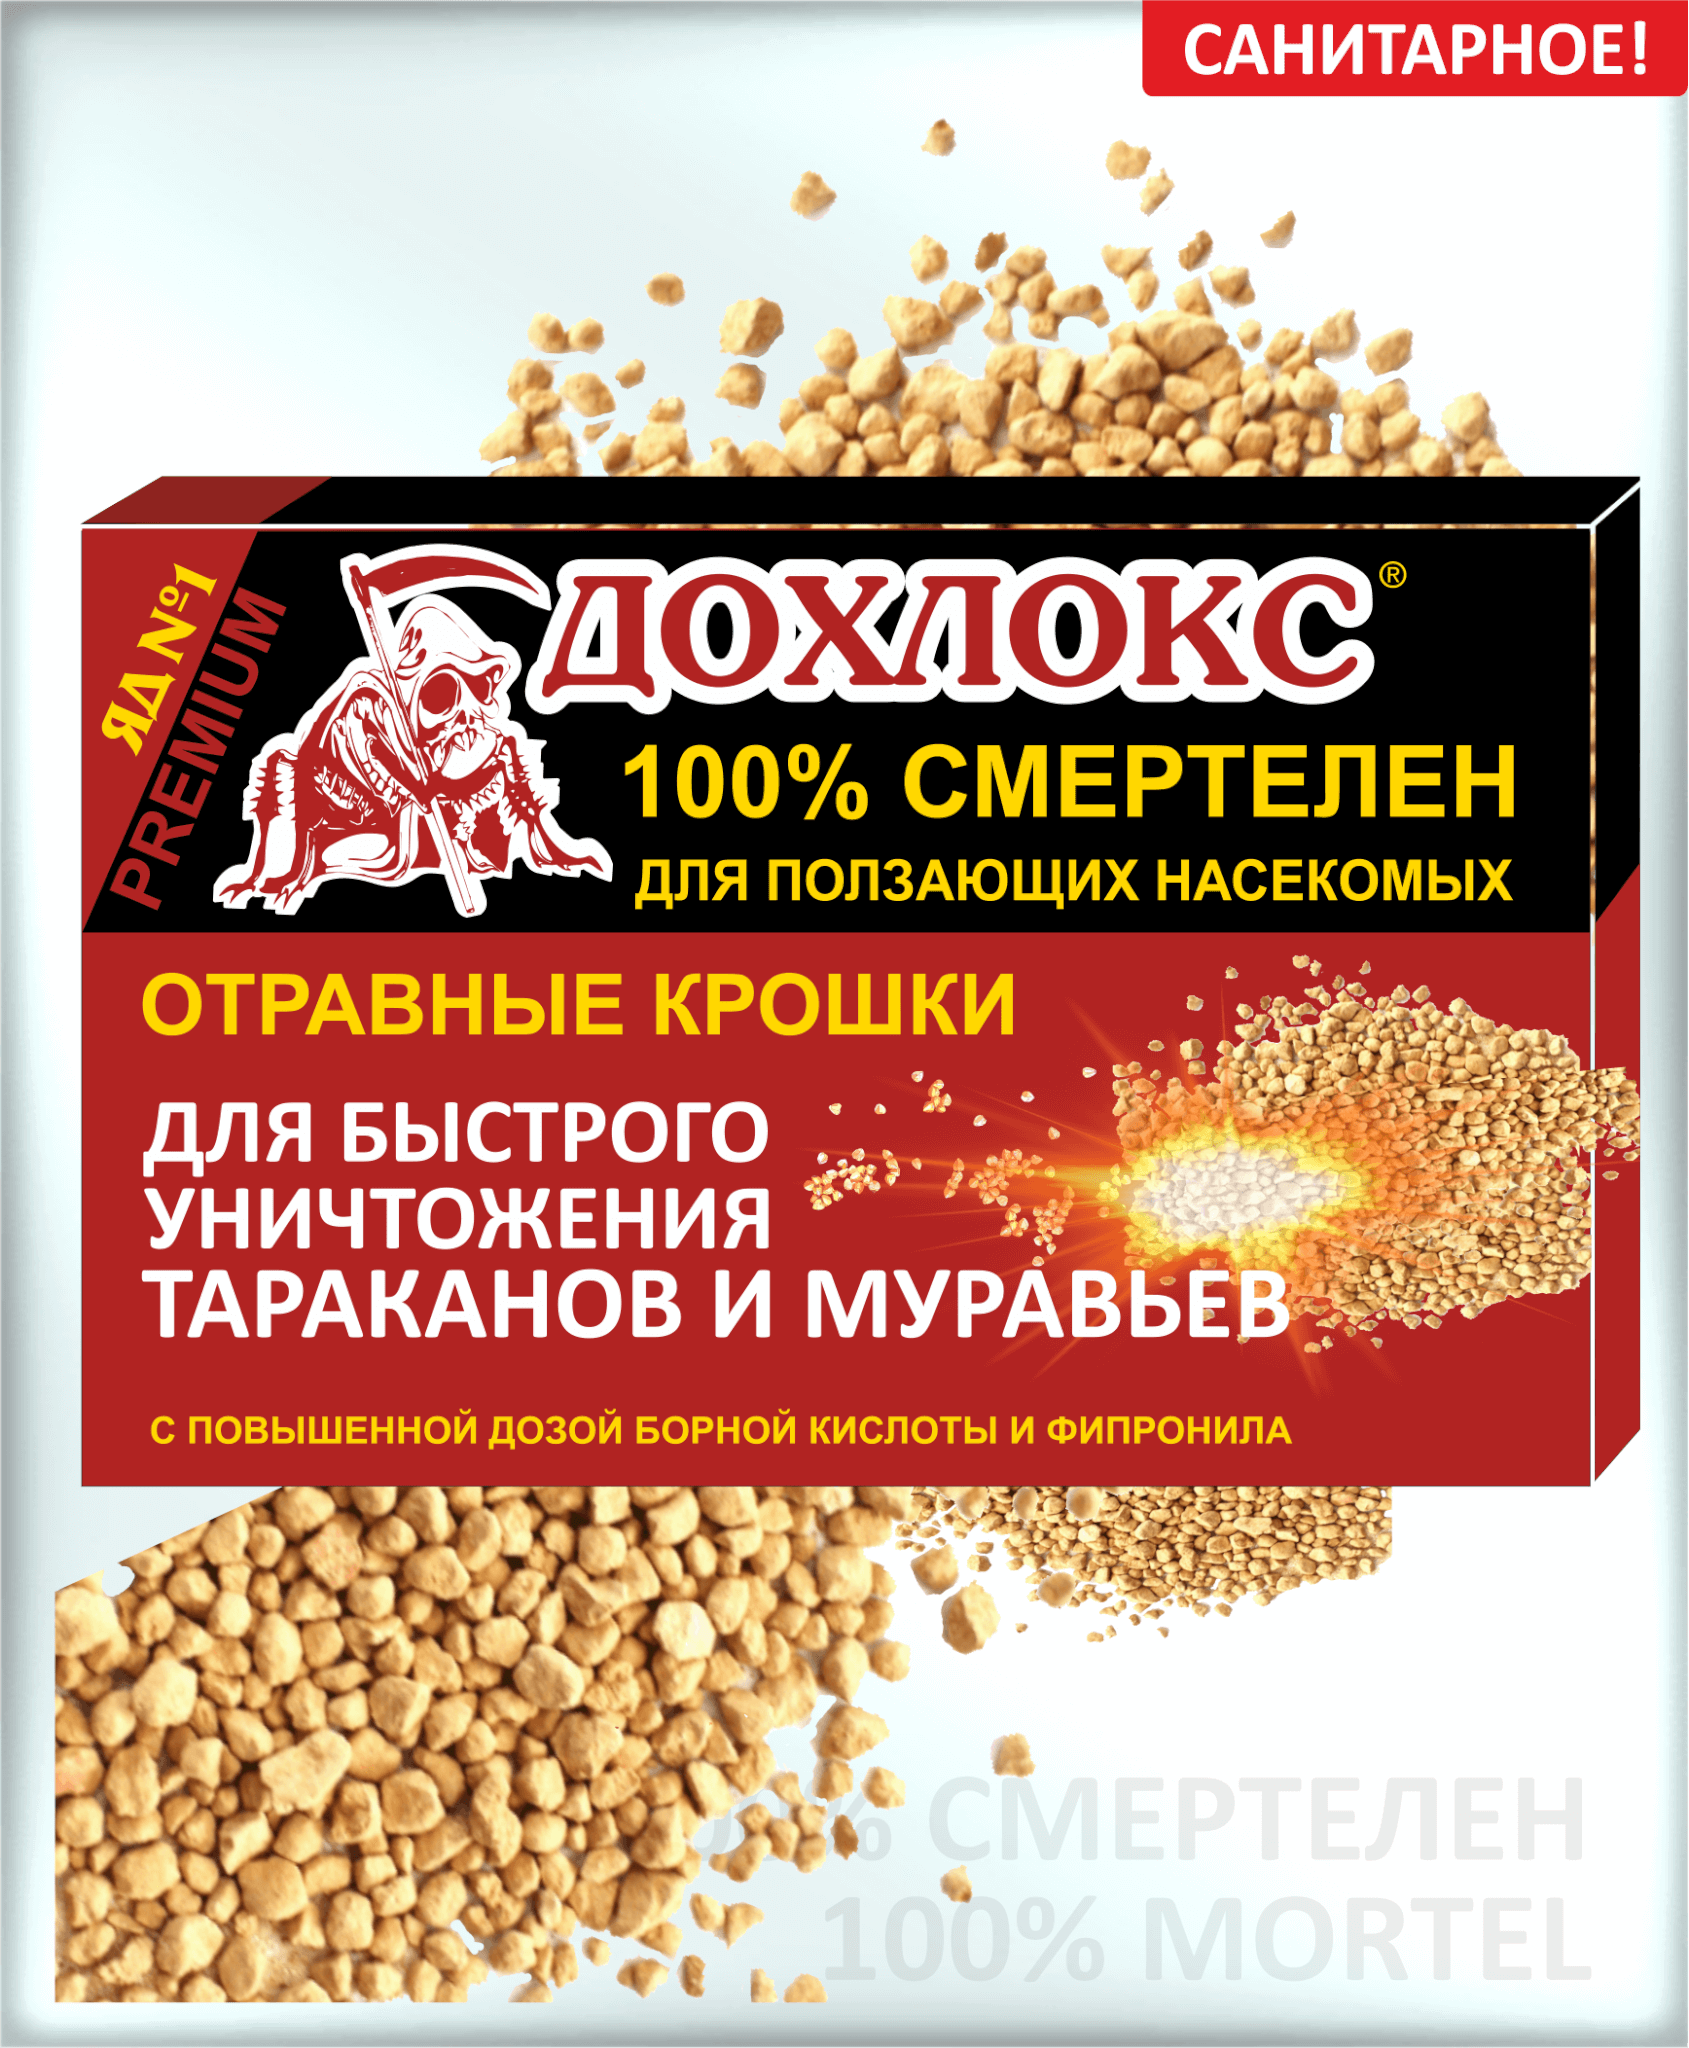 710 - Отравные крошки ДОХЛОКС - 100% эффективность, 100 грамм